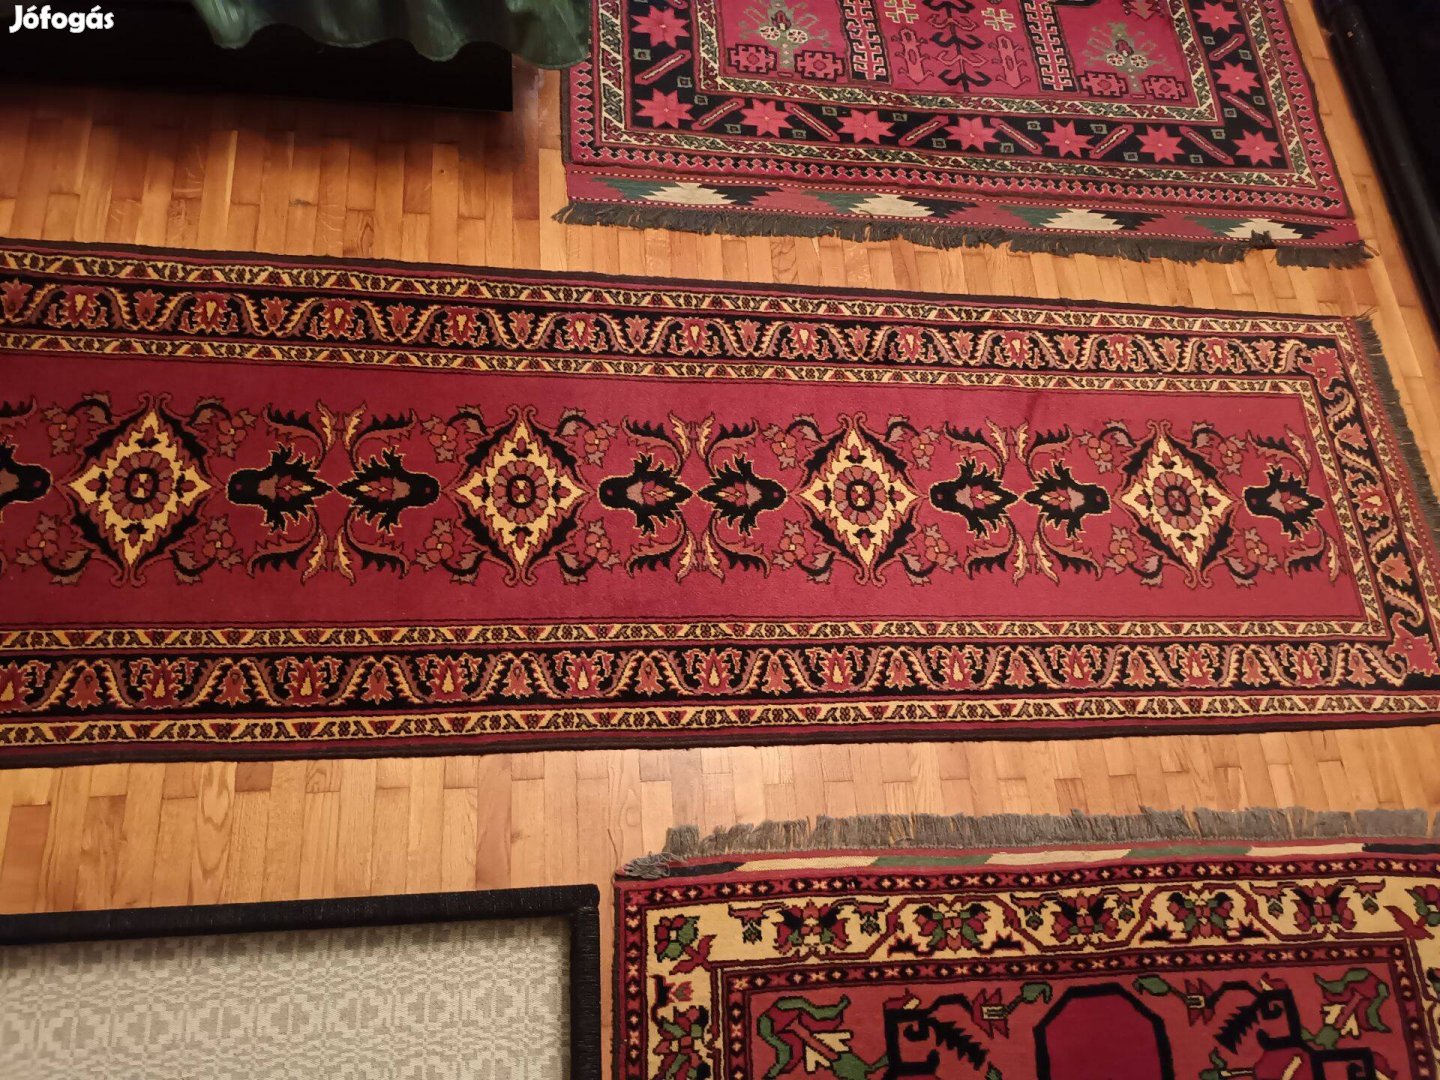 Kézi perzsa szőnyeg, futószőnyeg